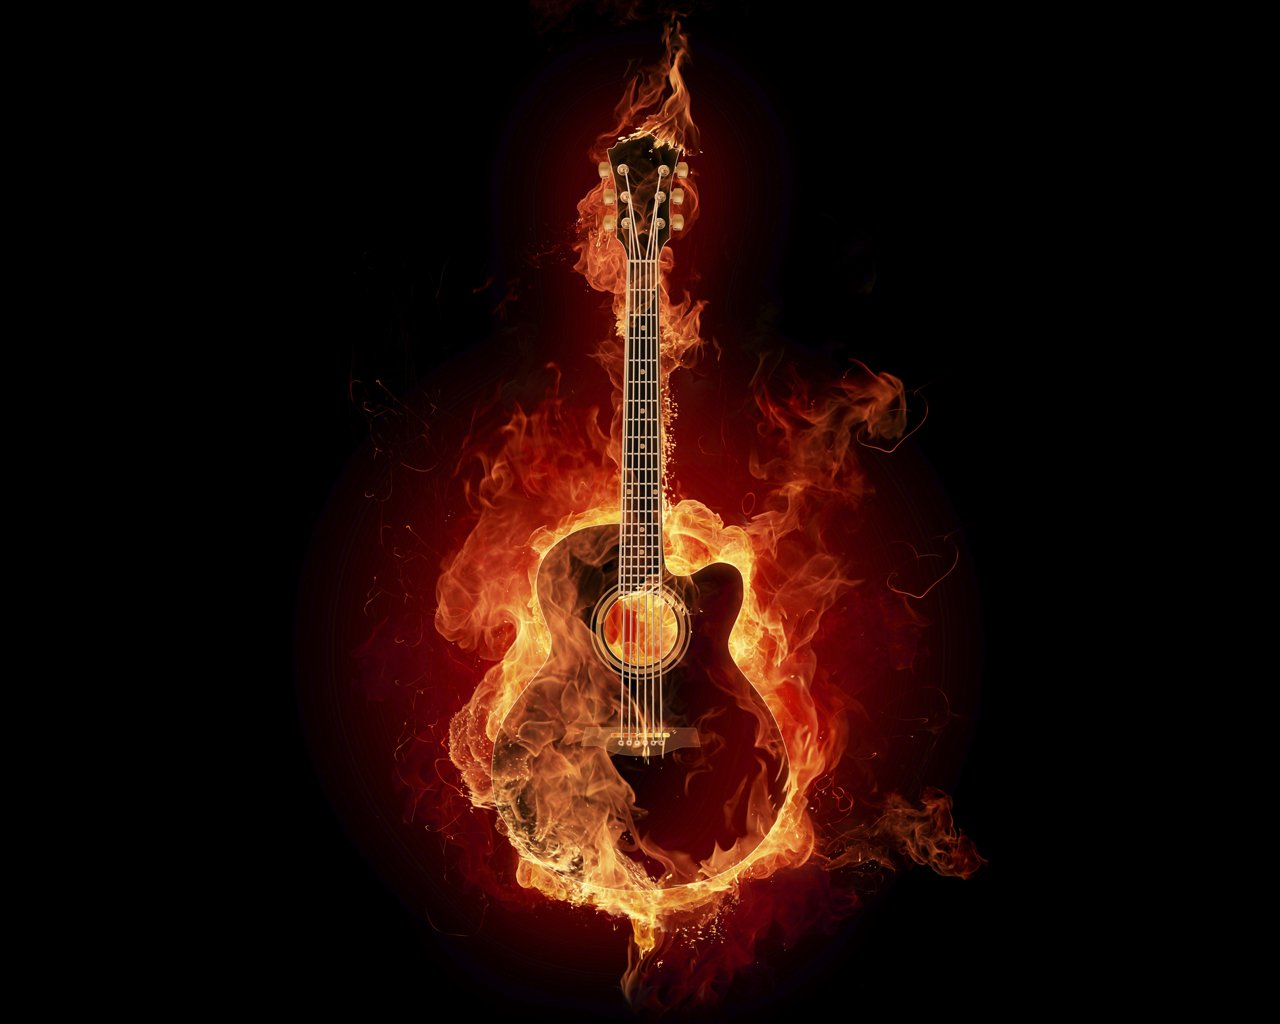 fire wallpaper,guitar,string instrument,plucked string instruments,musical instrument,flame